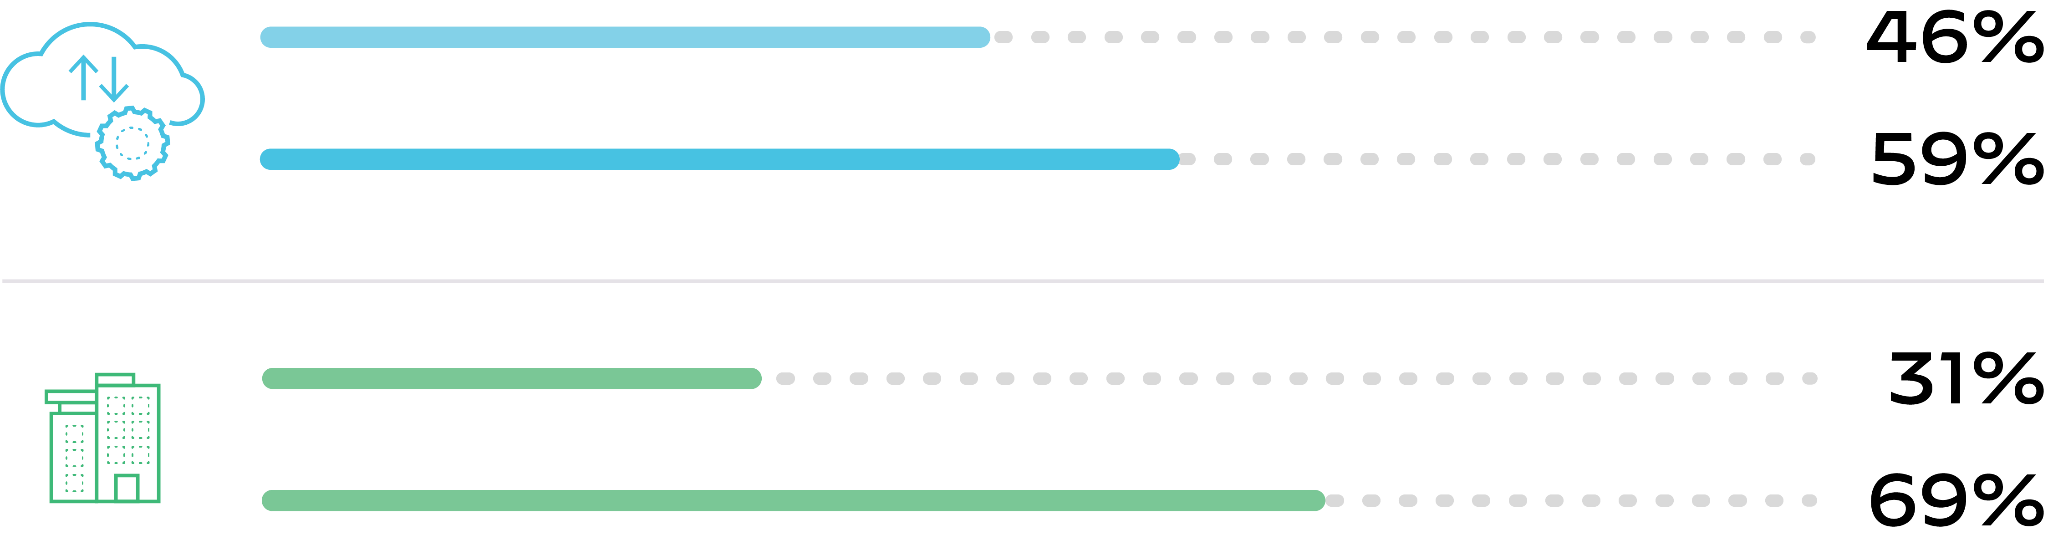 2020年以降のクラウドワークロードの変化の割合。青はクラウドワークロードのボリュームの変化の割合、緑はワークロードの半分以上をクラウドでホスティングしている組織数の変化の割合。この図では、クラウドワークロードの量が46%から59%に増加し、ワークロードの半分以上をクラウドでホストしている組織が31%から69%に増加していることがわかる。クラウドワークロードの普及により、クラウドの脅威に対する防御がこれまで以上に重要となっている。